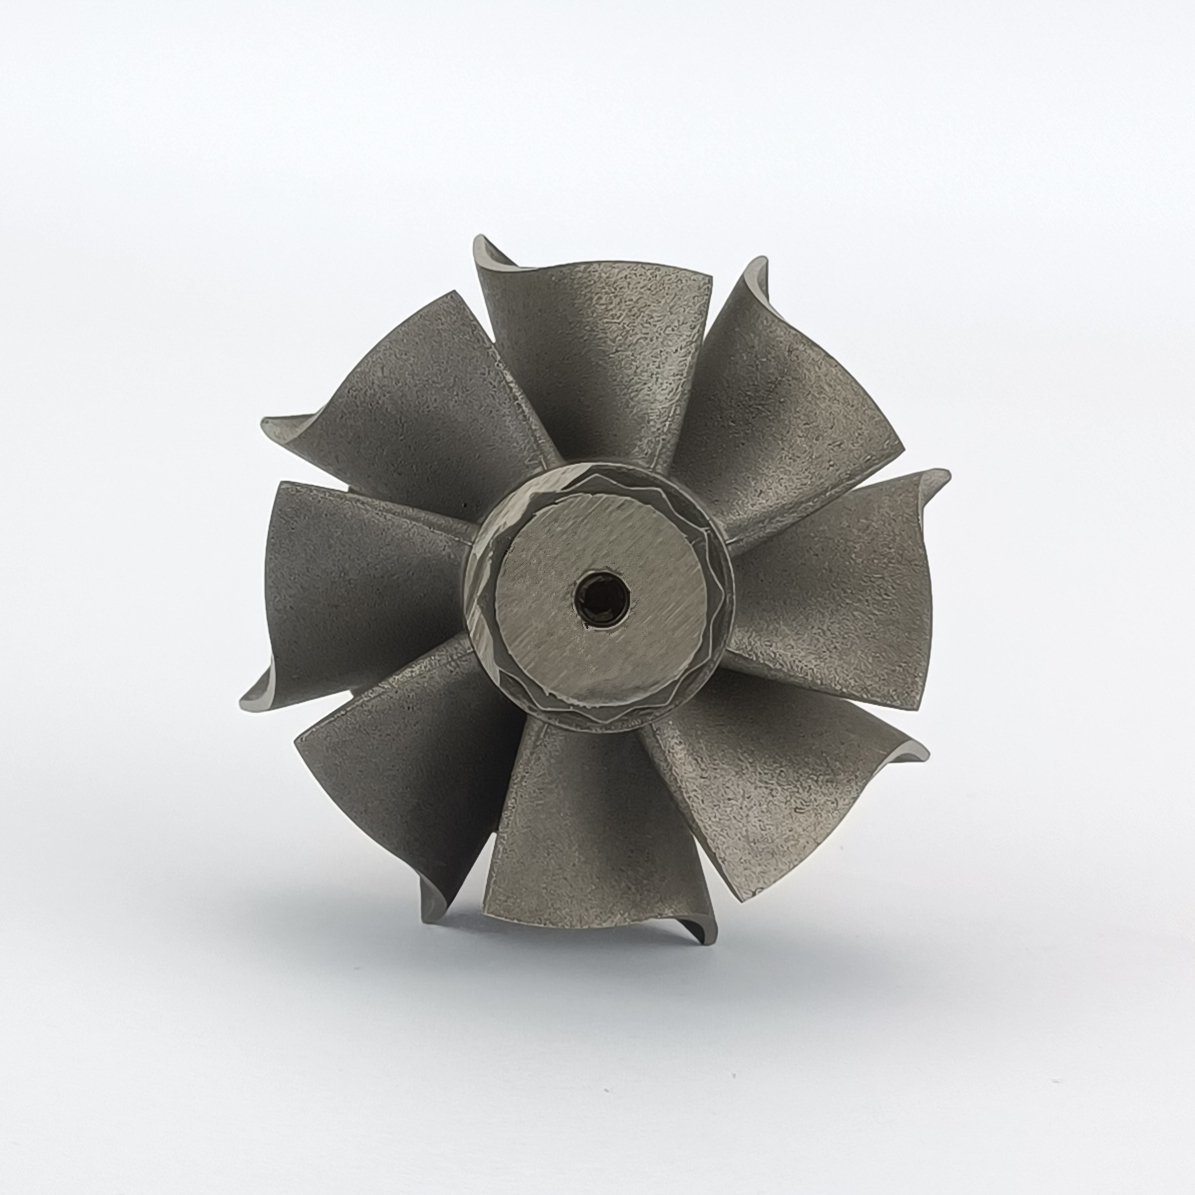 Turbo Turbine Wheel Shaft Rhf4/Rhf5 Ind 44.2mm Exd 37.685mm Blades8